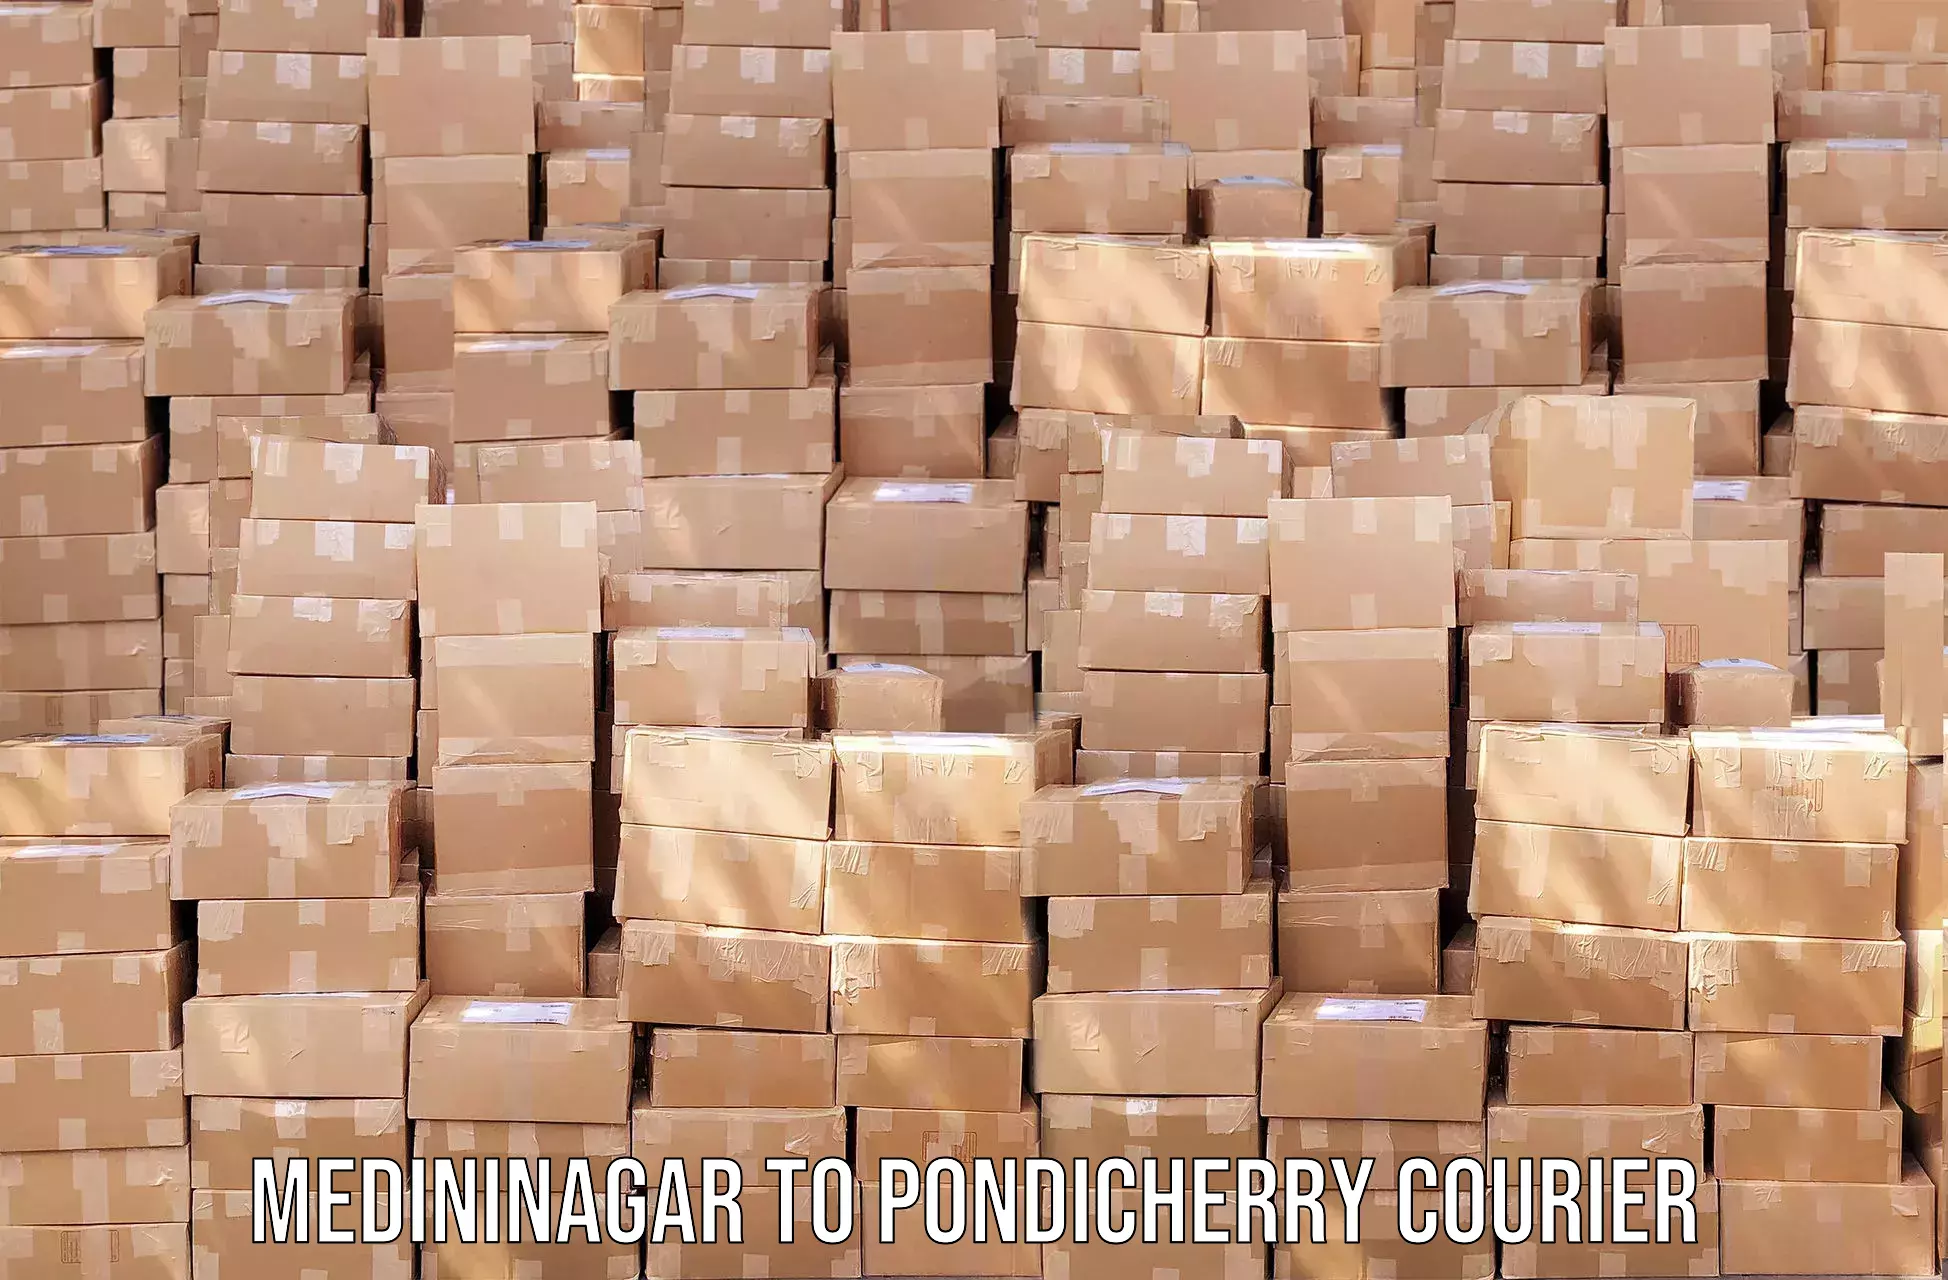 Express postal services in Medininagar to NIT Puducherry